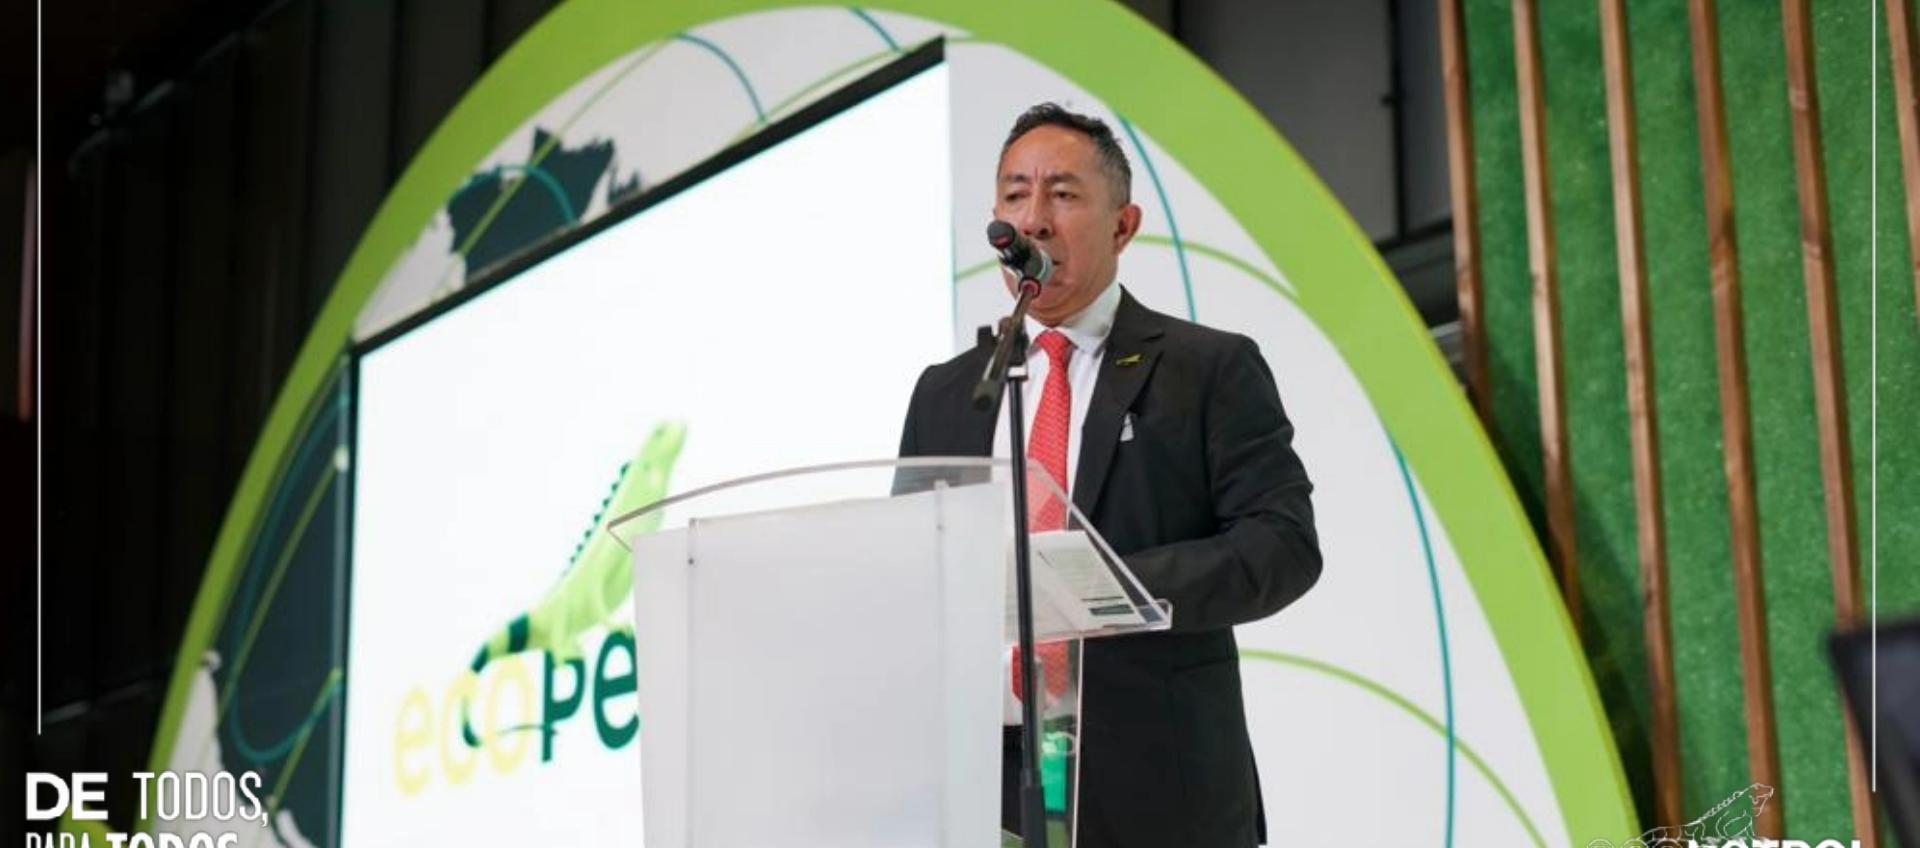 Ricardo Roa, Presidente de Ecopetrol.